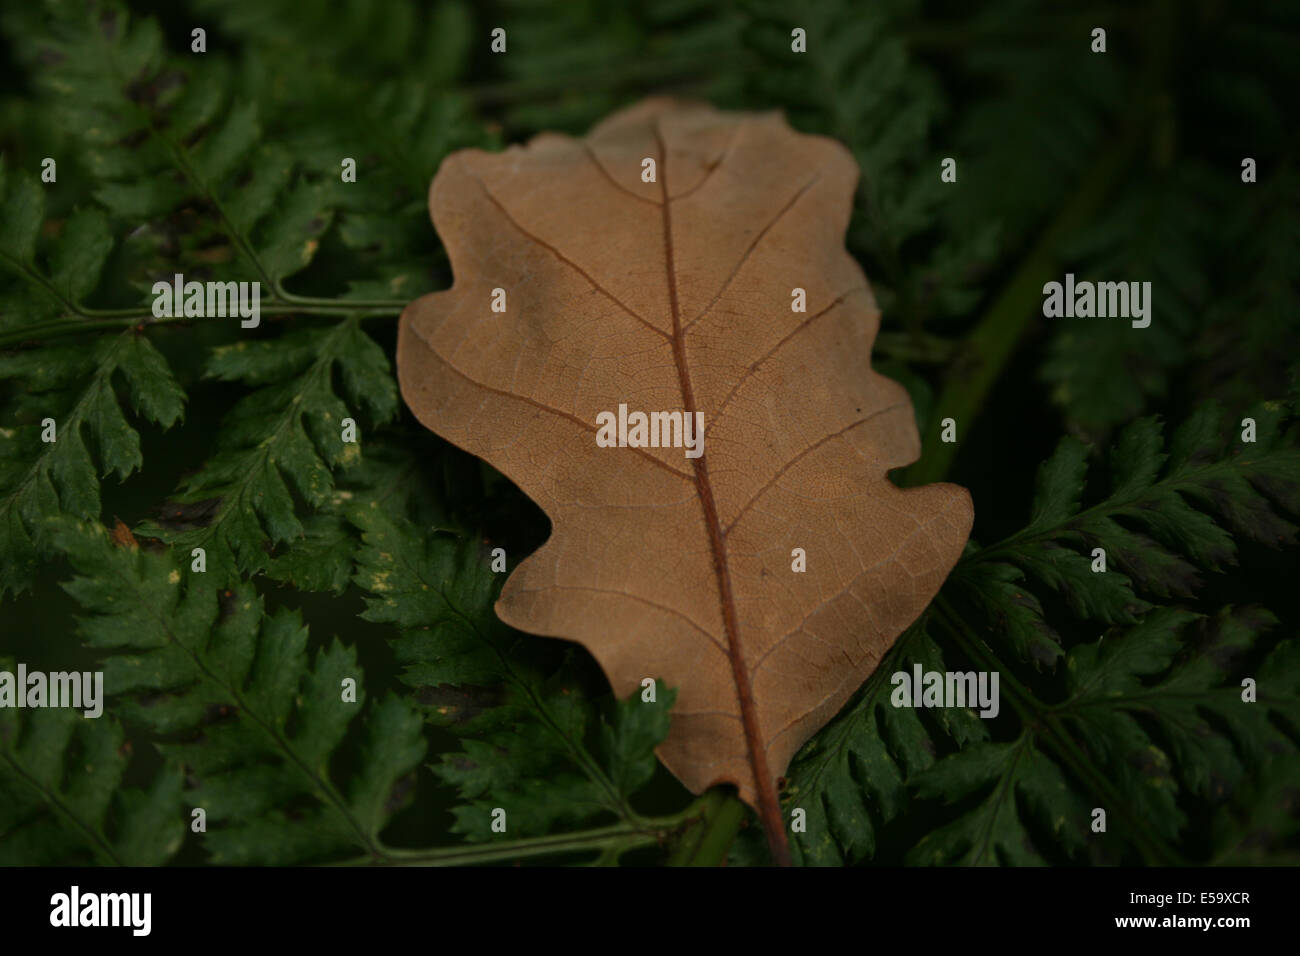 Oak leaf on fern Stock Vector Images - Alamy